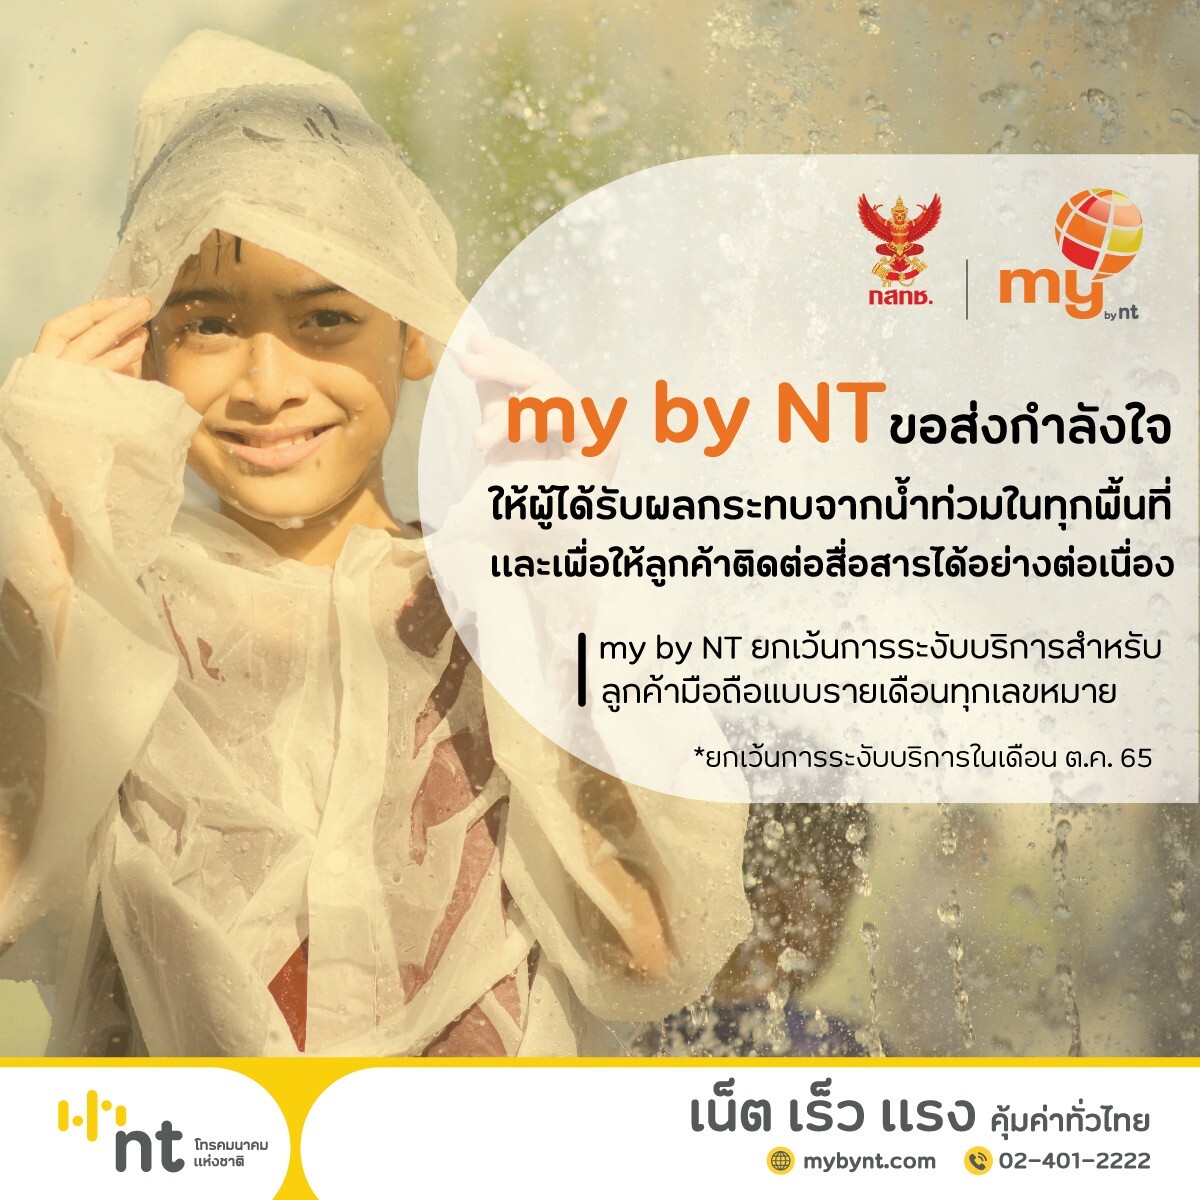 NT ขอส่งกำลังใจให้ผู้ได้รับผลกระทบจากน้ำท่วมในทุกพื้นที่ และเพื่อให้ลูกค้าติดต่อสื่อสาร ได้อย่างต่อเนื่อง